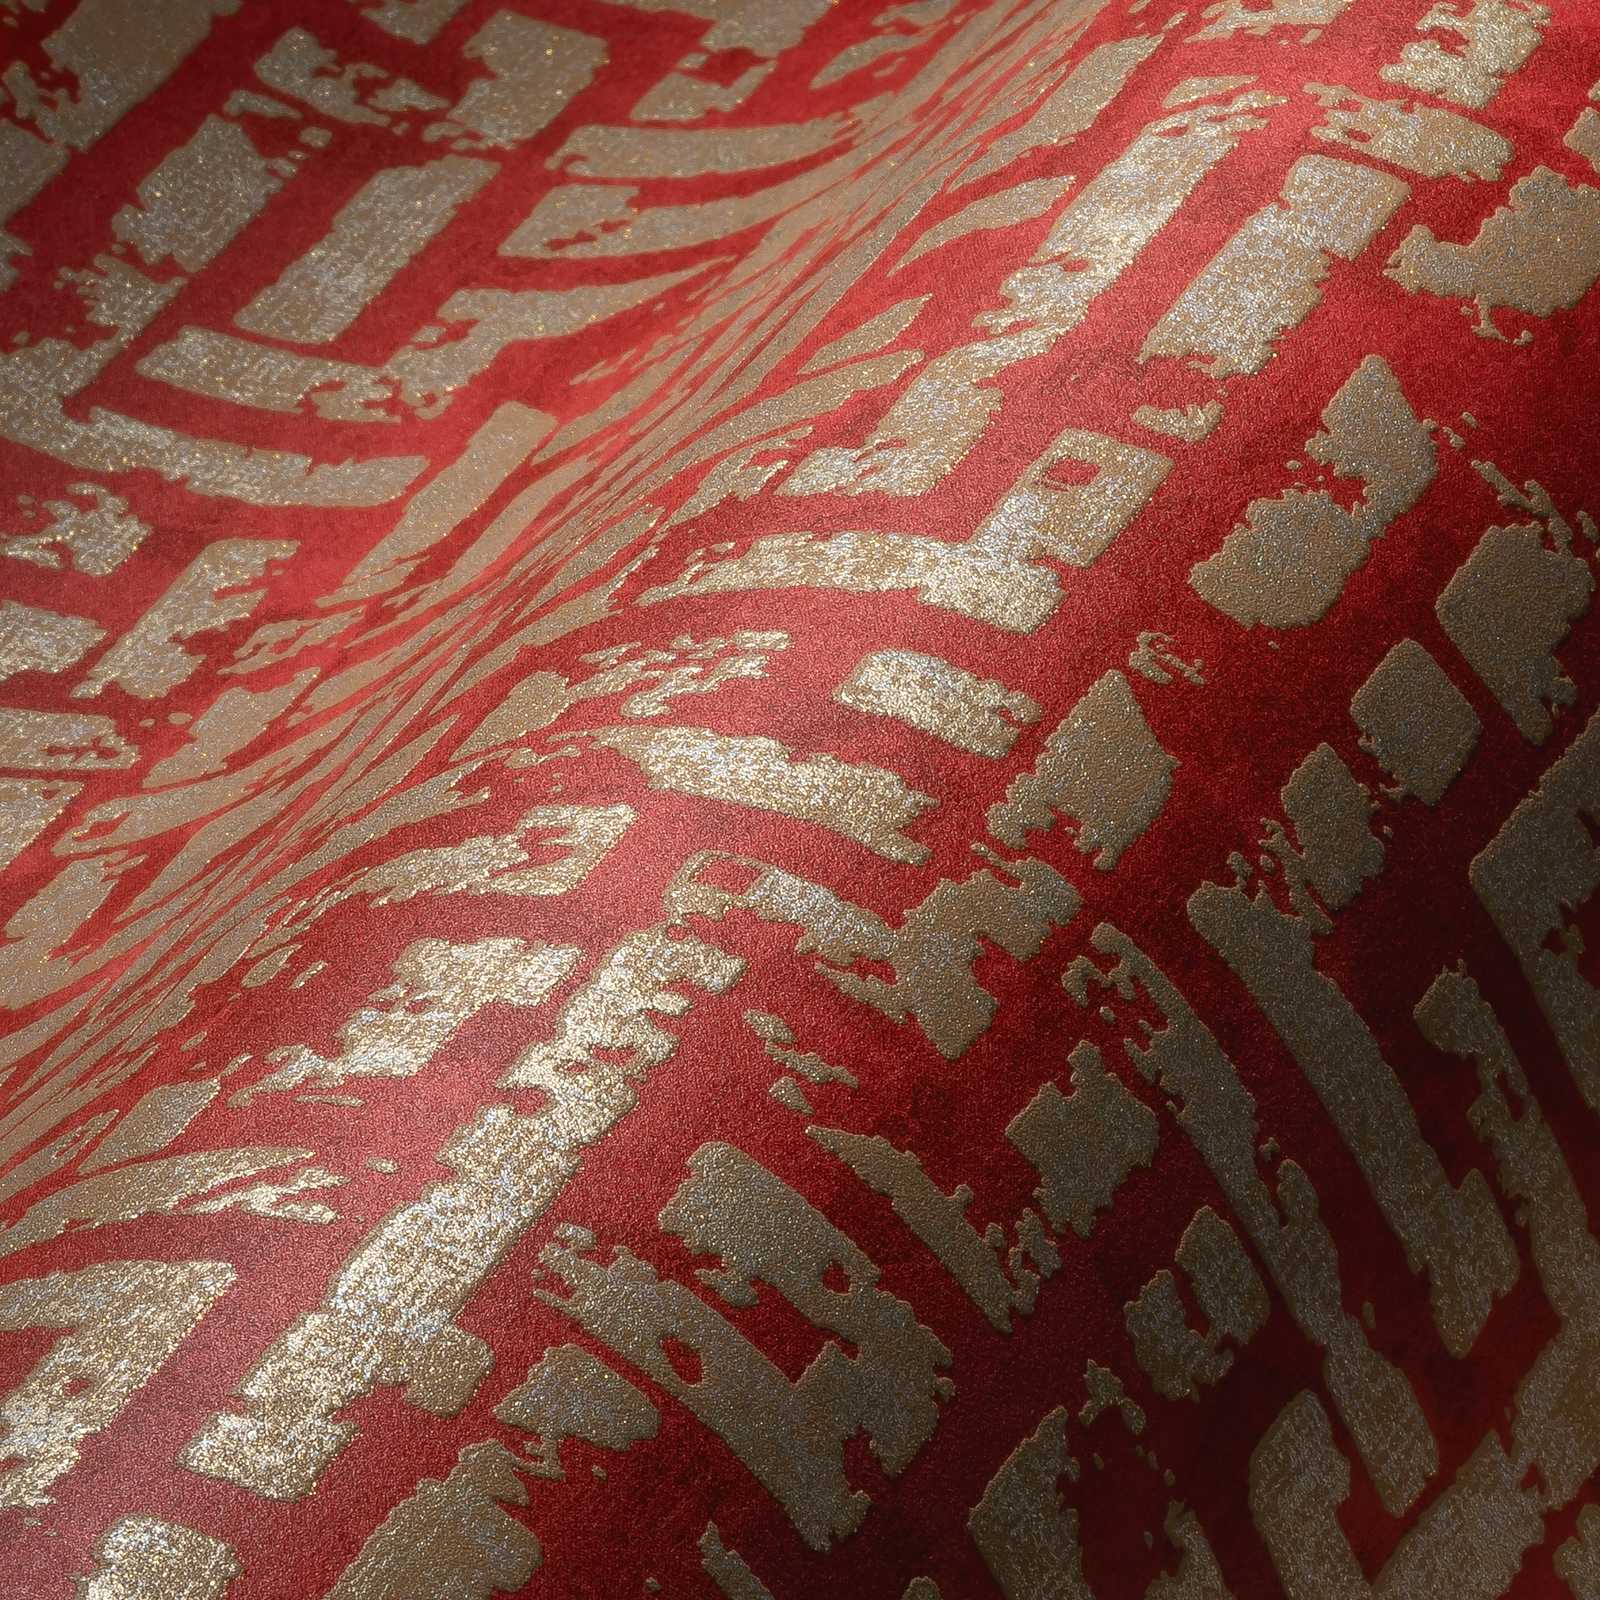             Papier peint rouge-or avec motif graphique & aspect usé - rouge, métallique
        